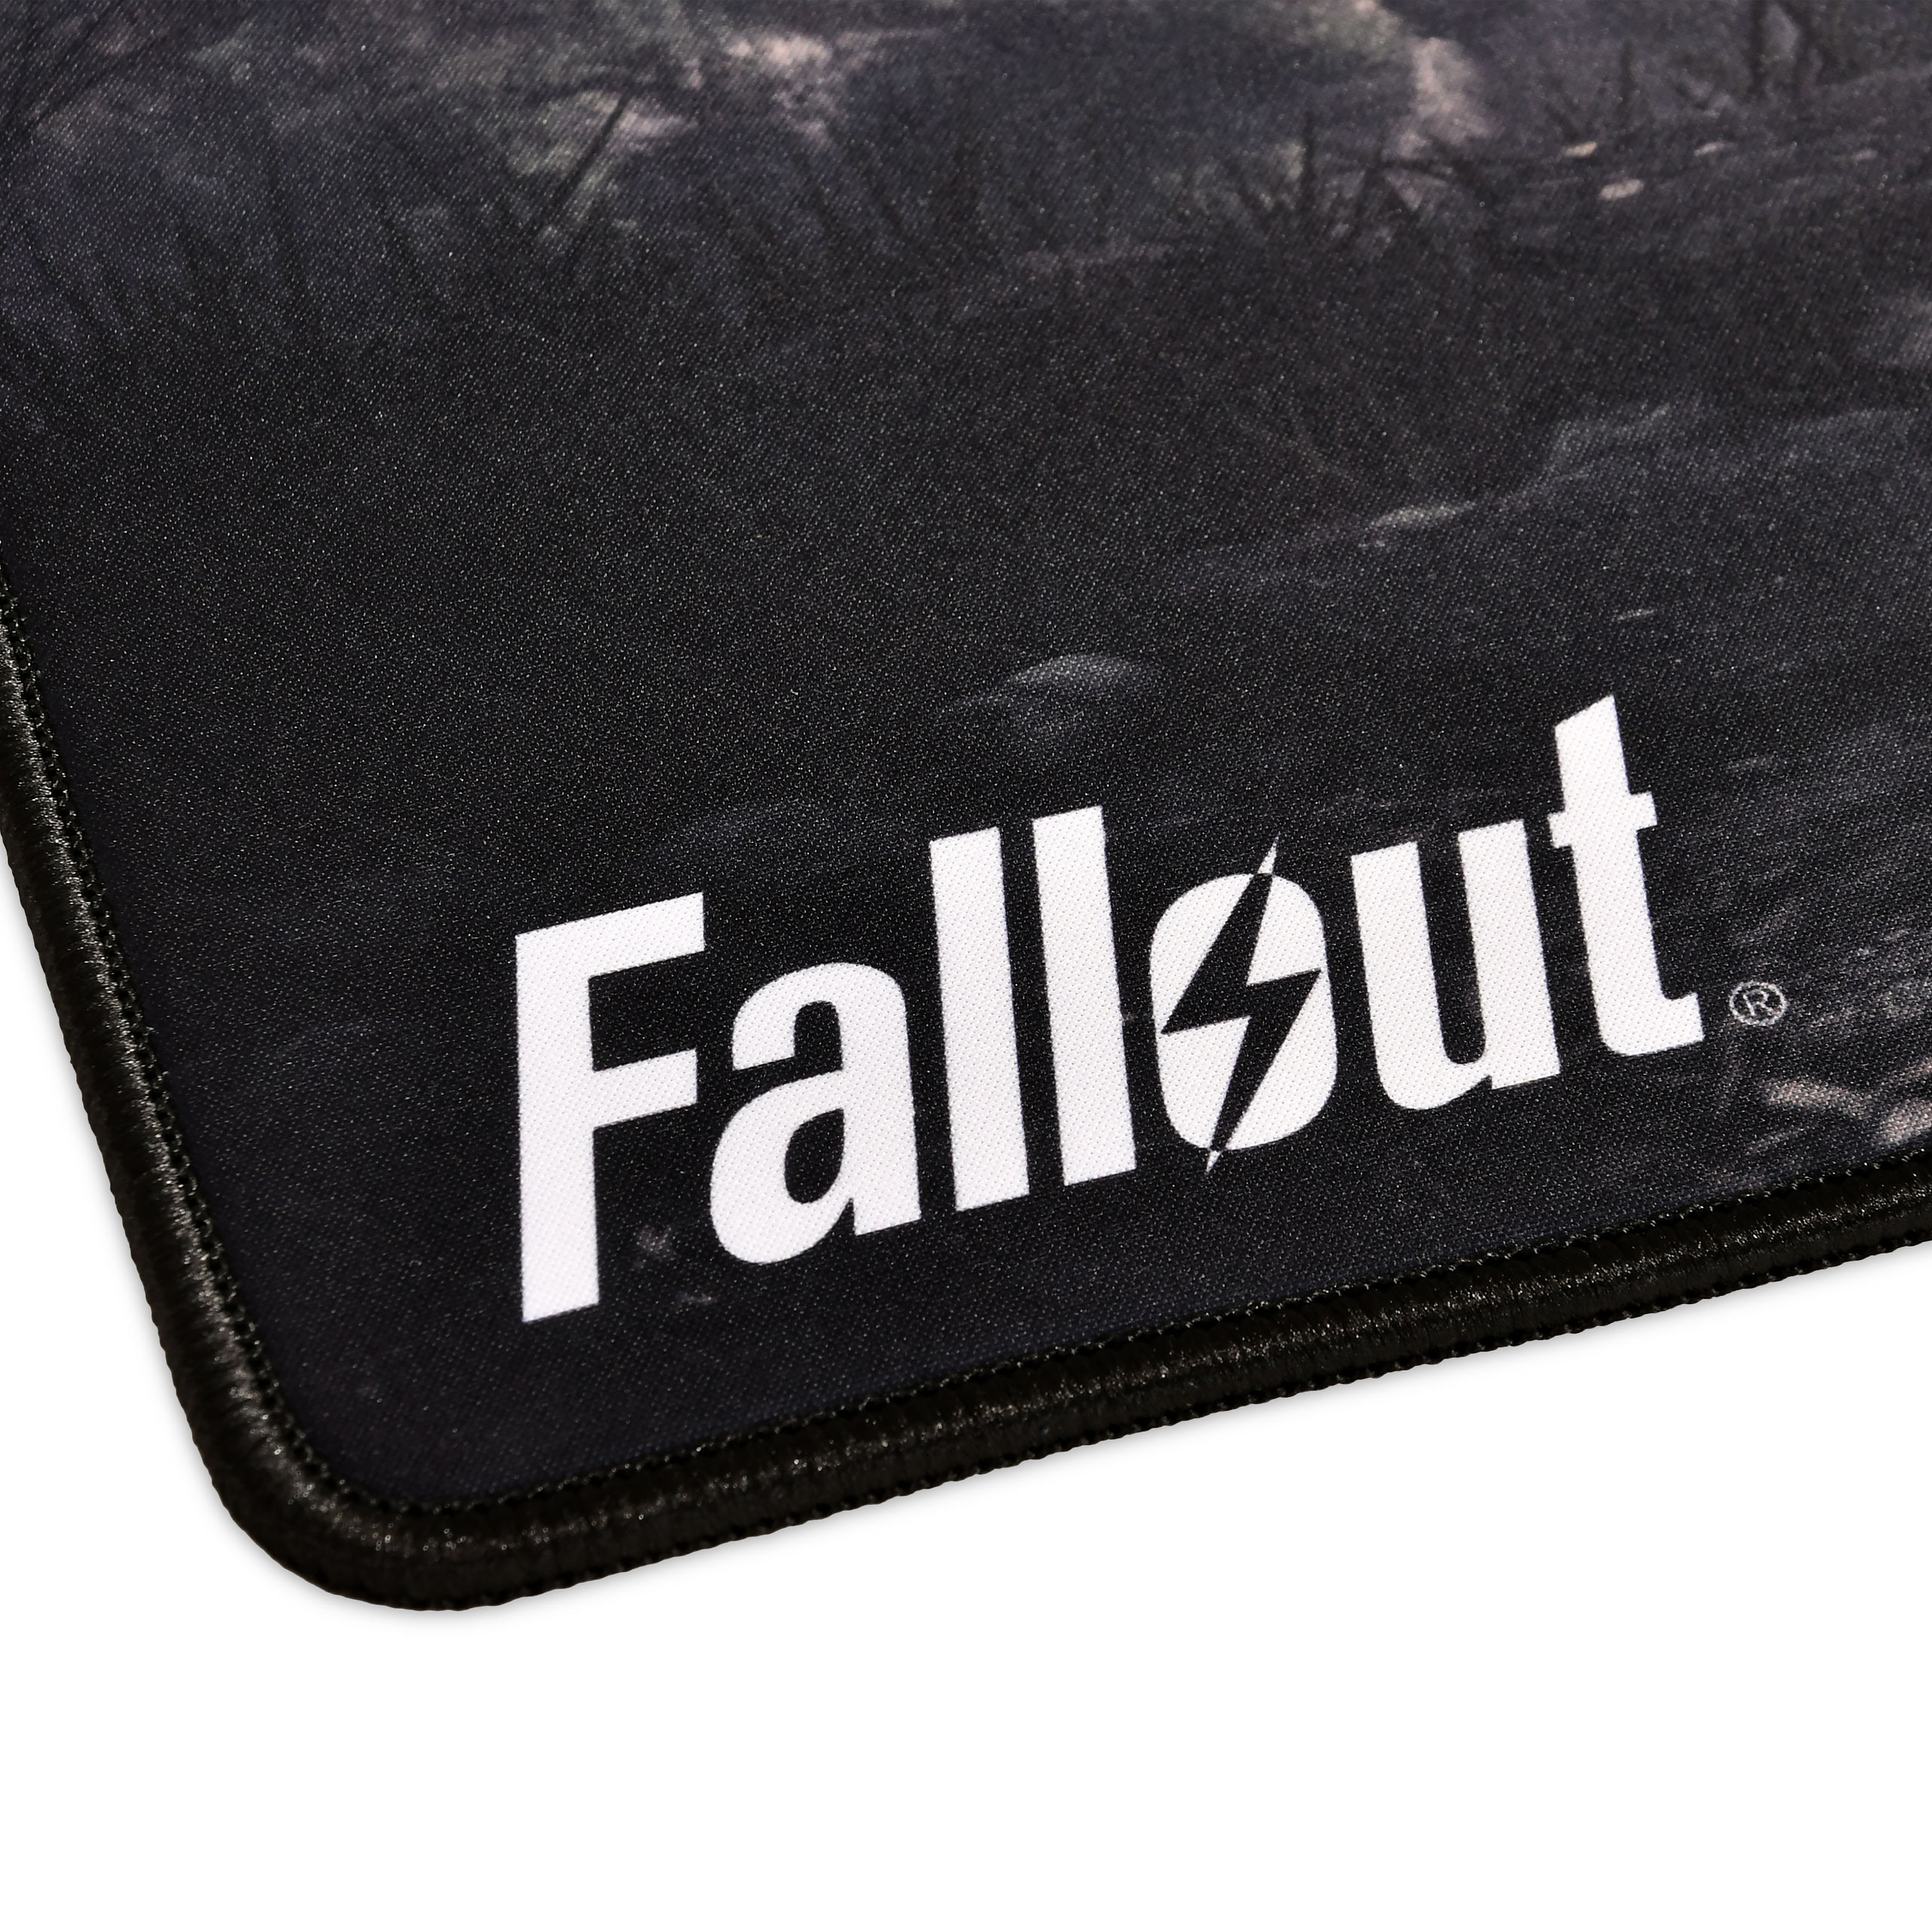 Fallout - Keyart Helmet Mousepad